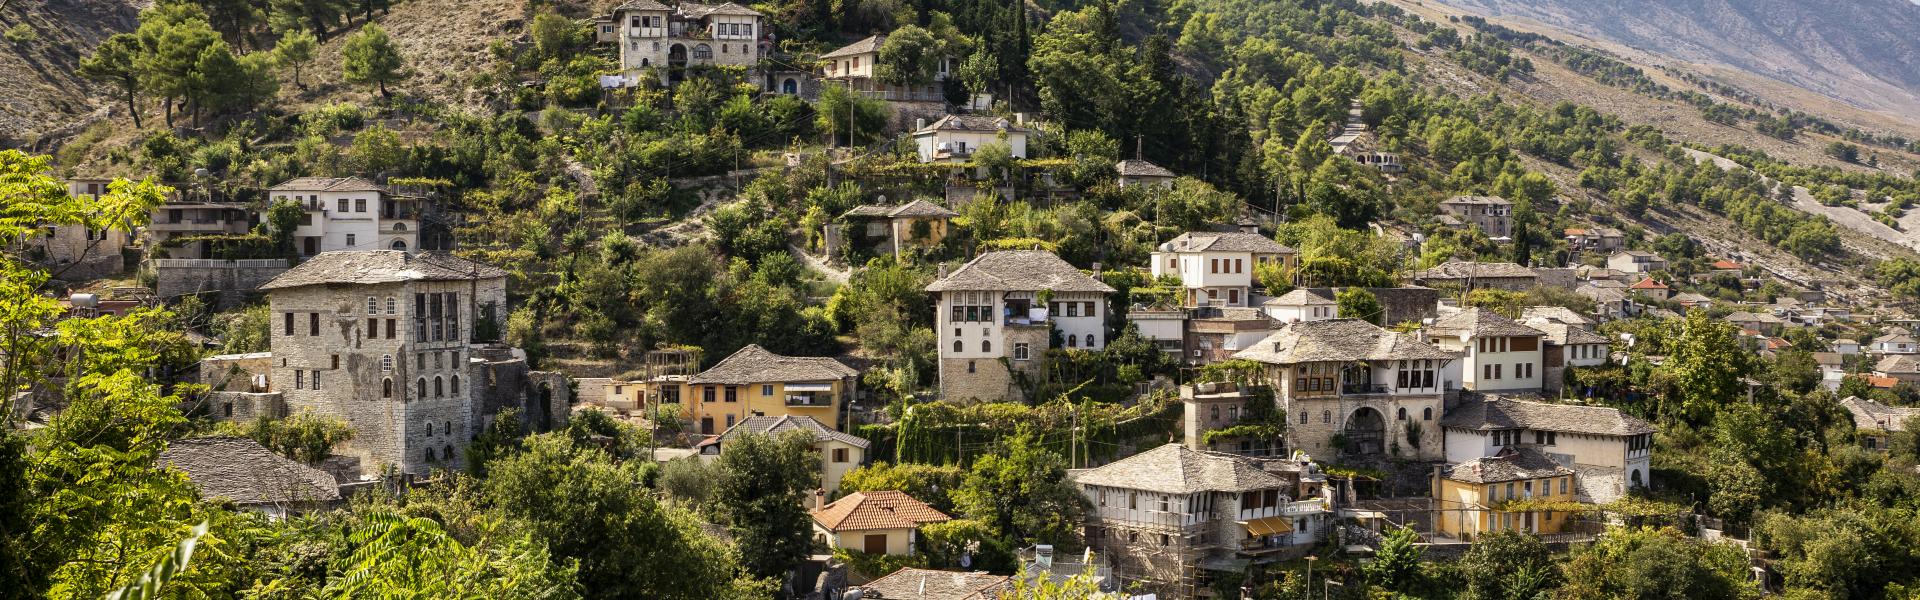 Case vacanze e appartamenti in Albania in affitto - CaseVacanza.it